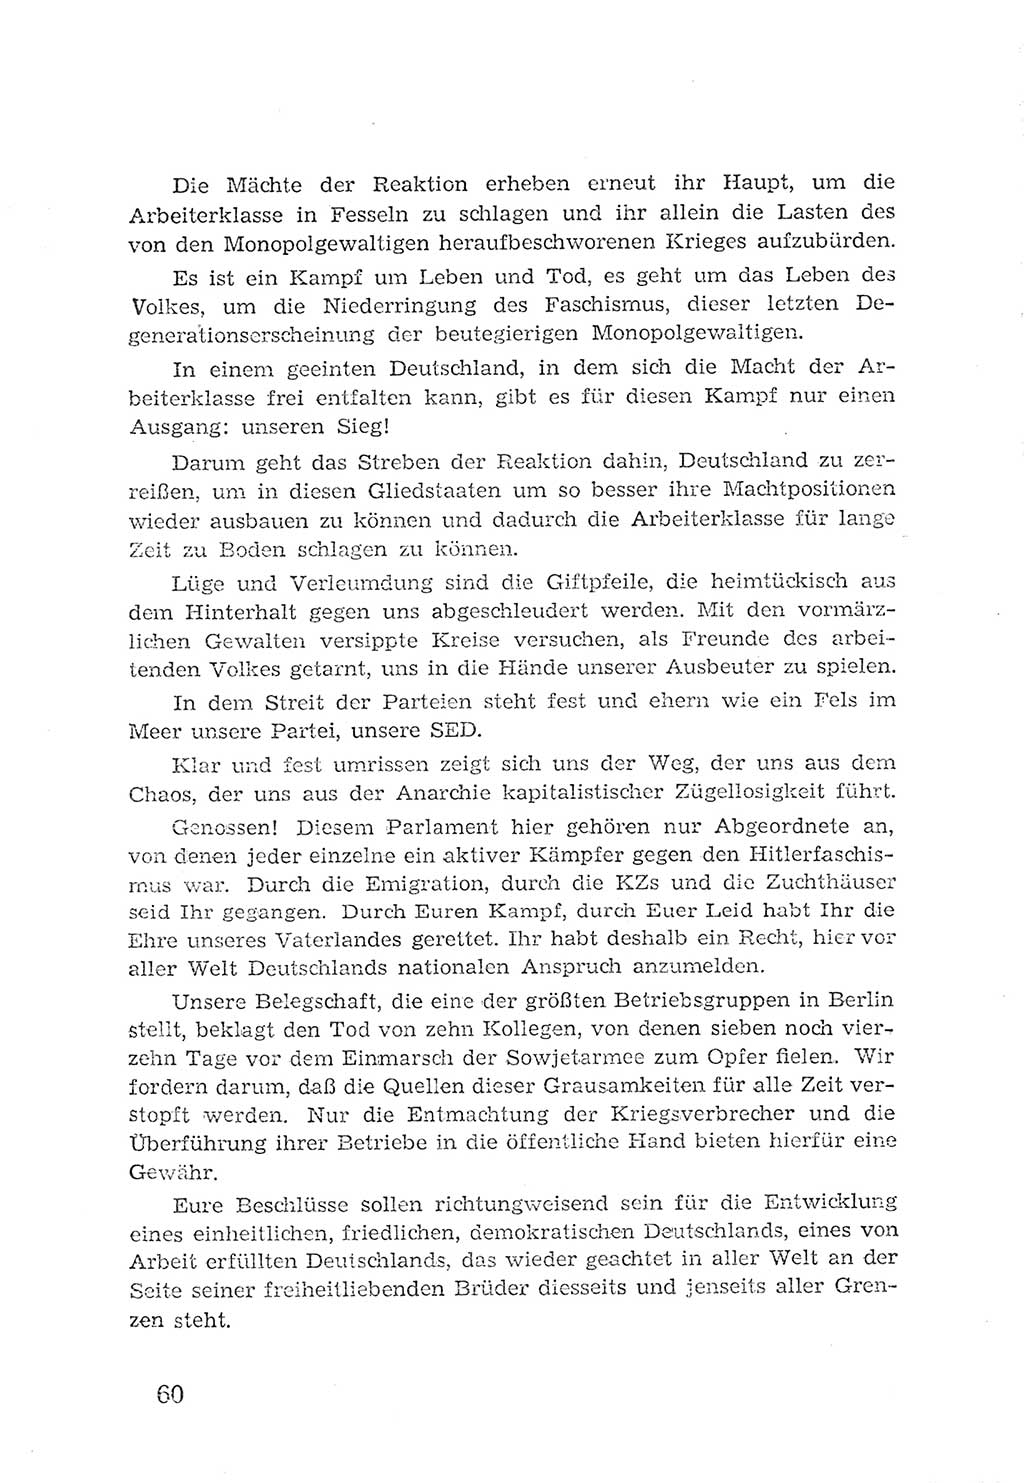 Protokoll der Verhandlungen des 2. Parteitages der Sozialistischen Einheitspartei Deutschlands (SED) [Sowjetische Besatzungszone (SBZ) Deutschlands] 1947, Seite 60 (Prot. Verh. 2. PT SED SBZ Dtl. 1947, S. 60)